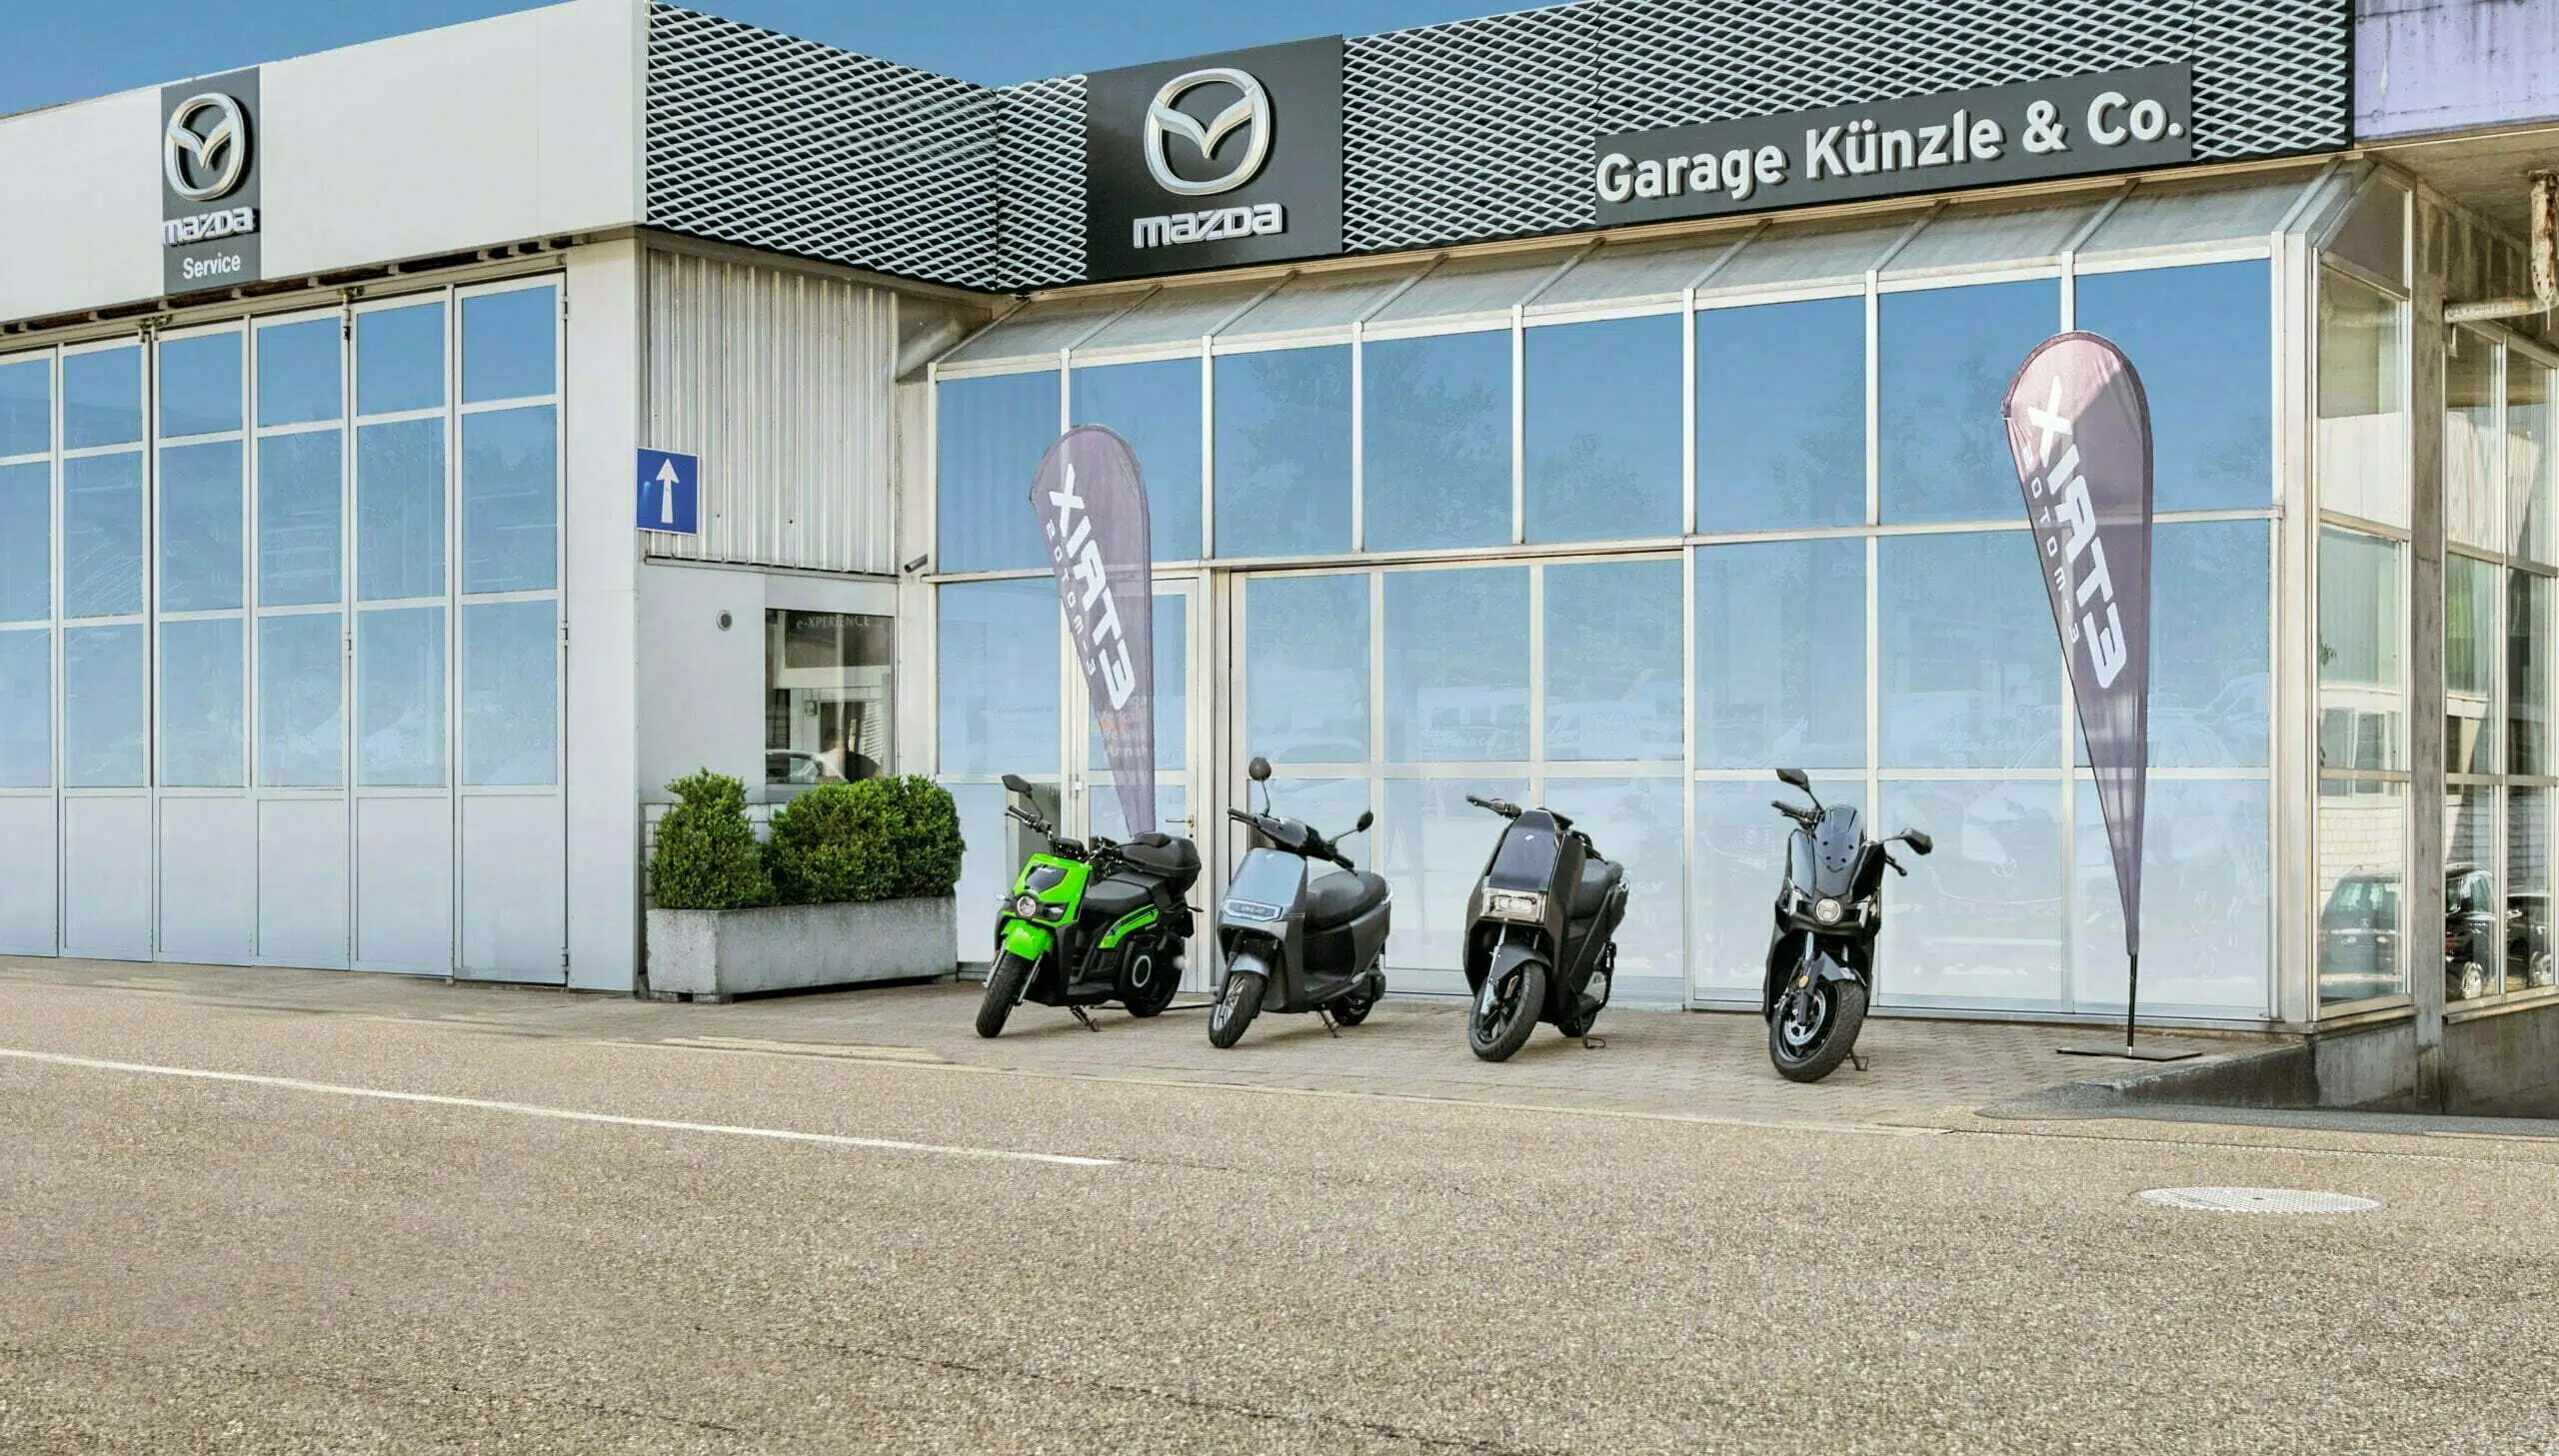 Garage Künzle scooter